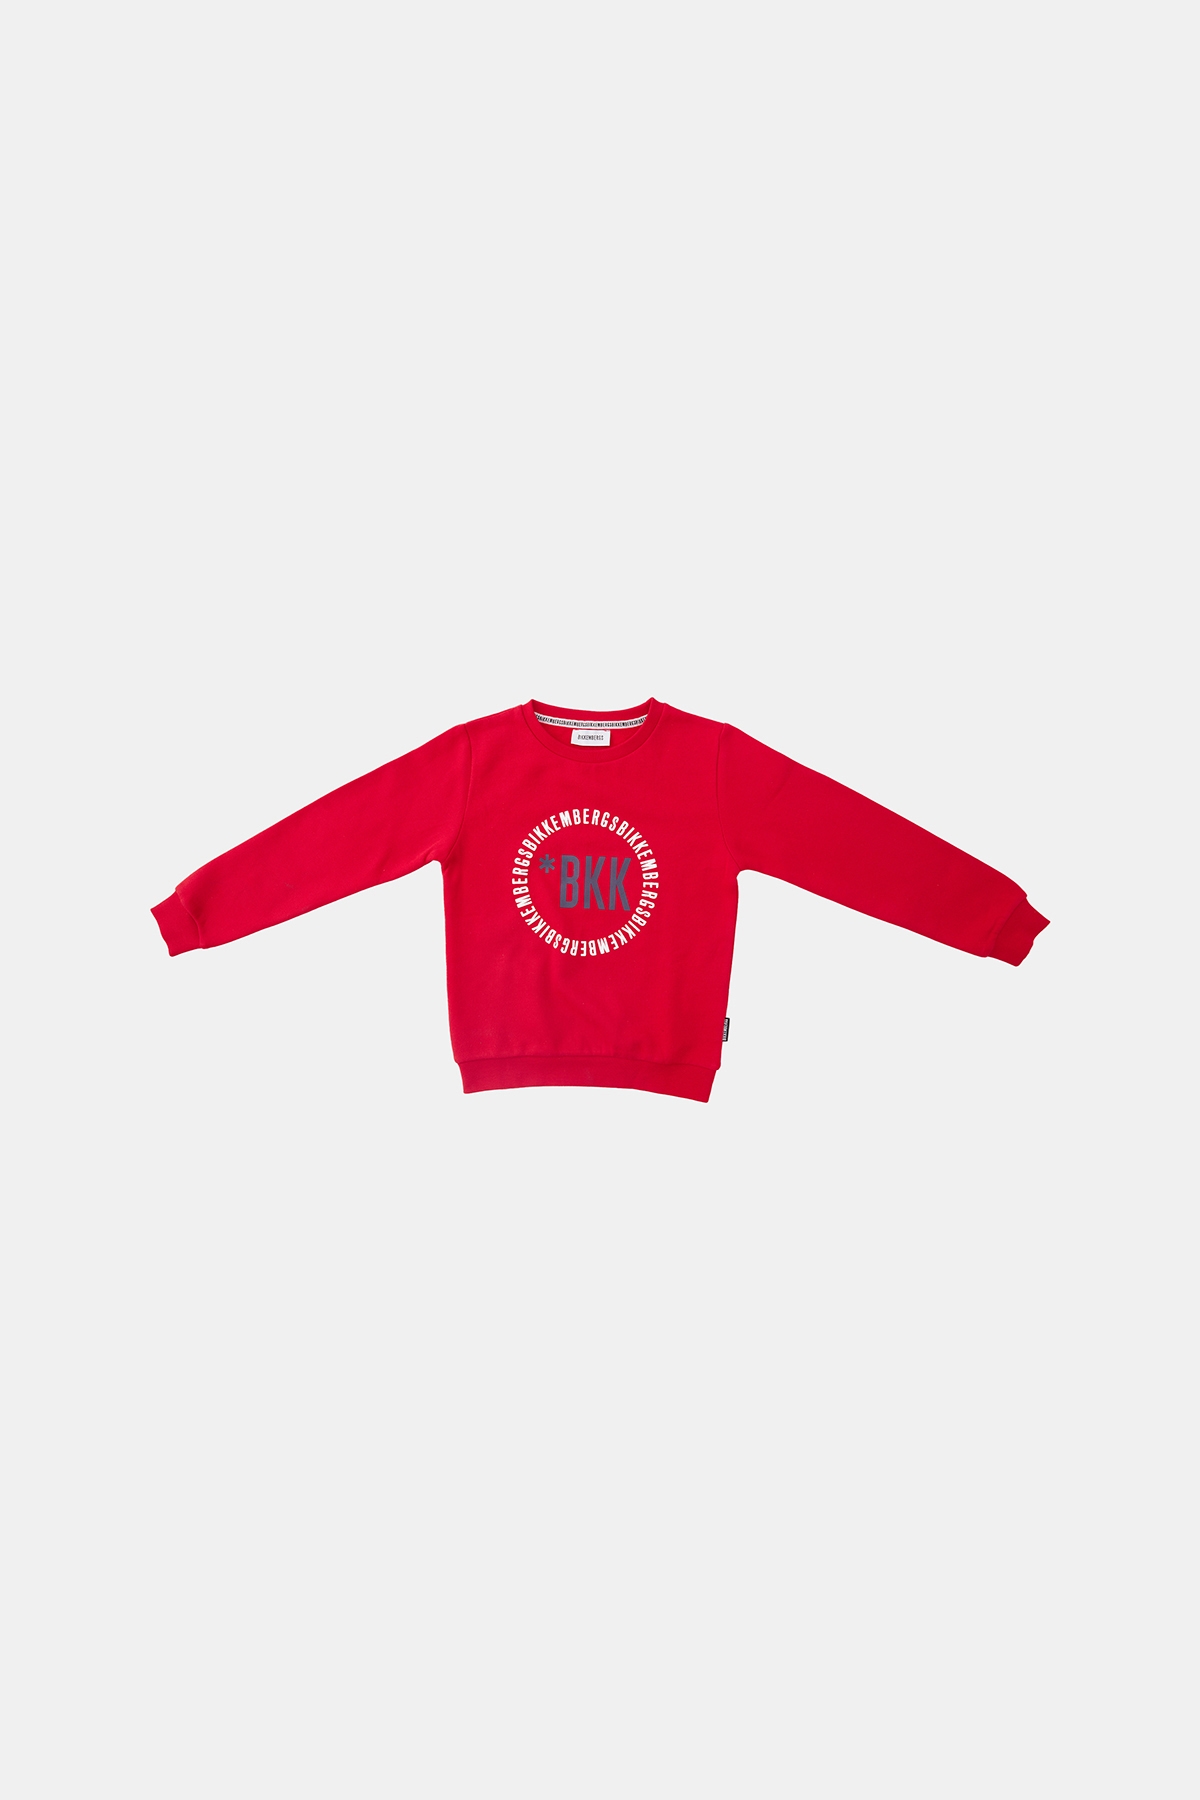 Erkek Çocuk Kırmızı Sweatshirt